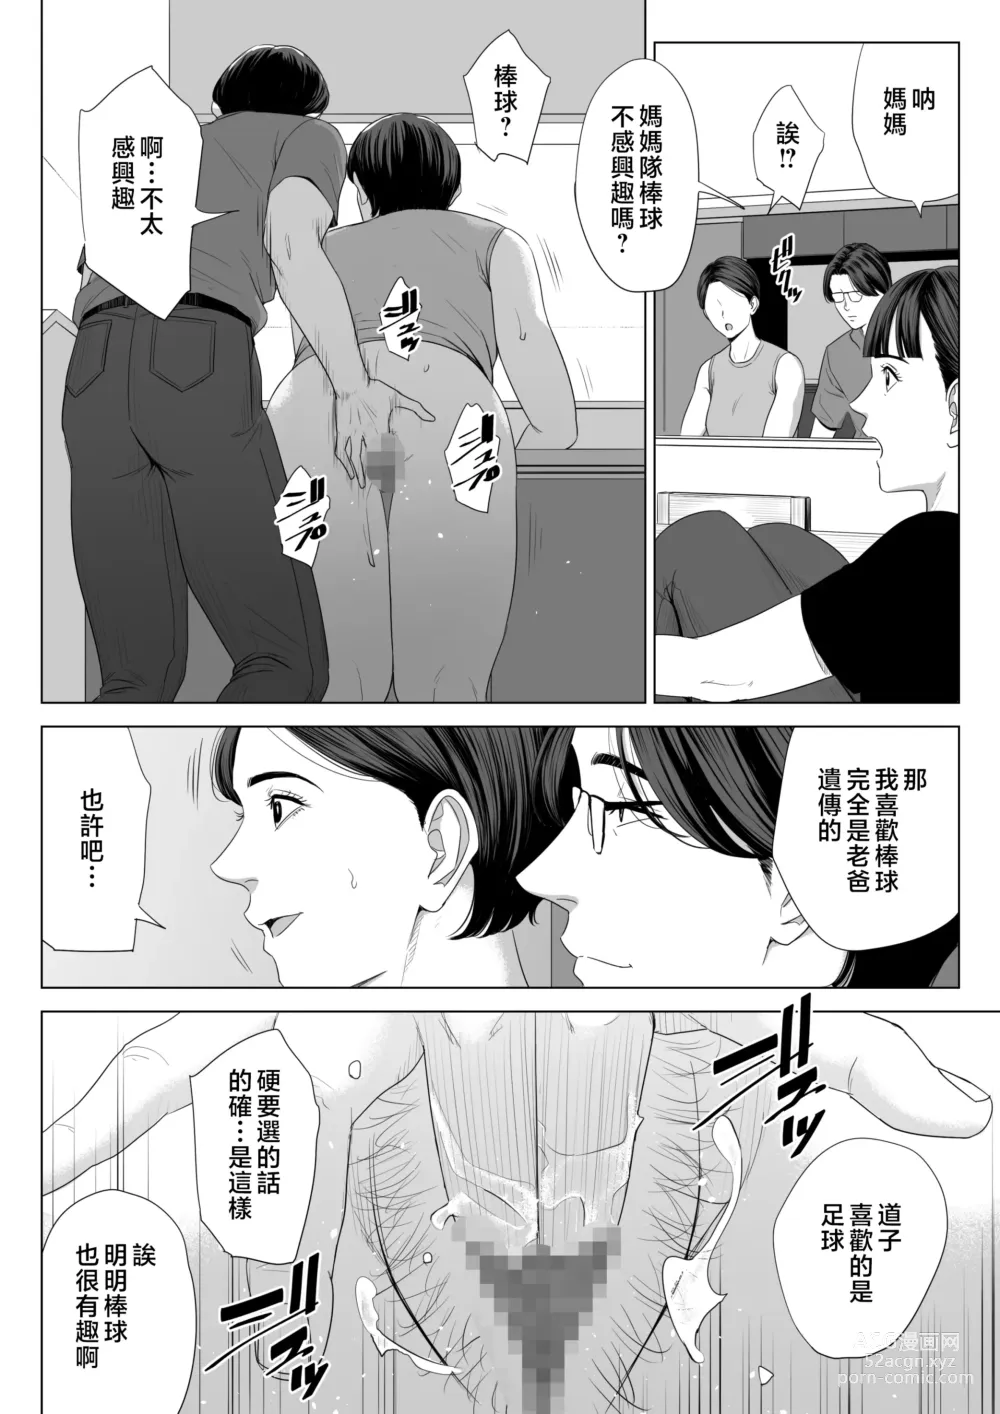 Page 61 of doujinshi Gibo no Tsukaeru Karada.